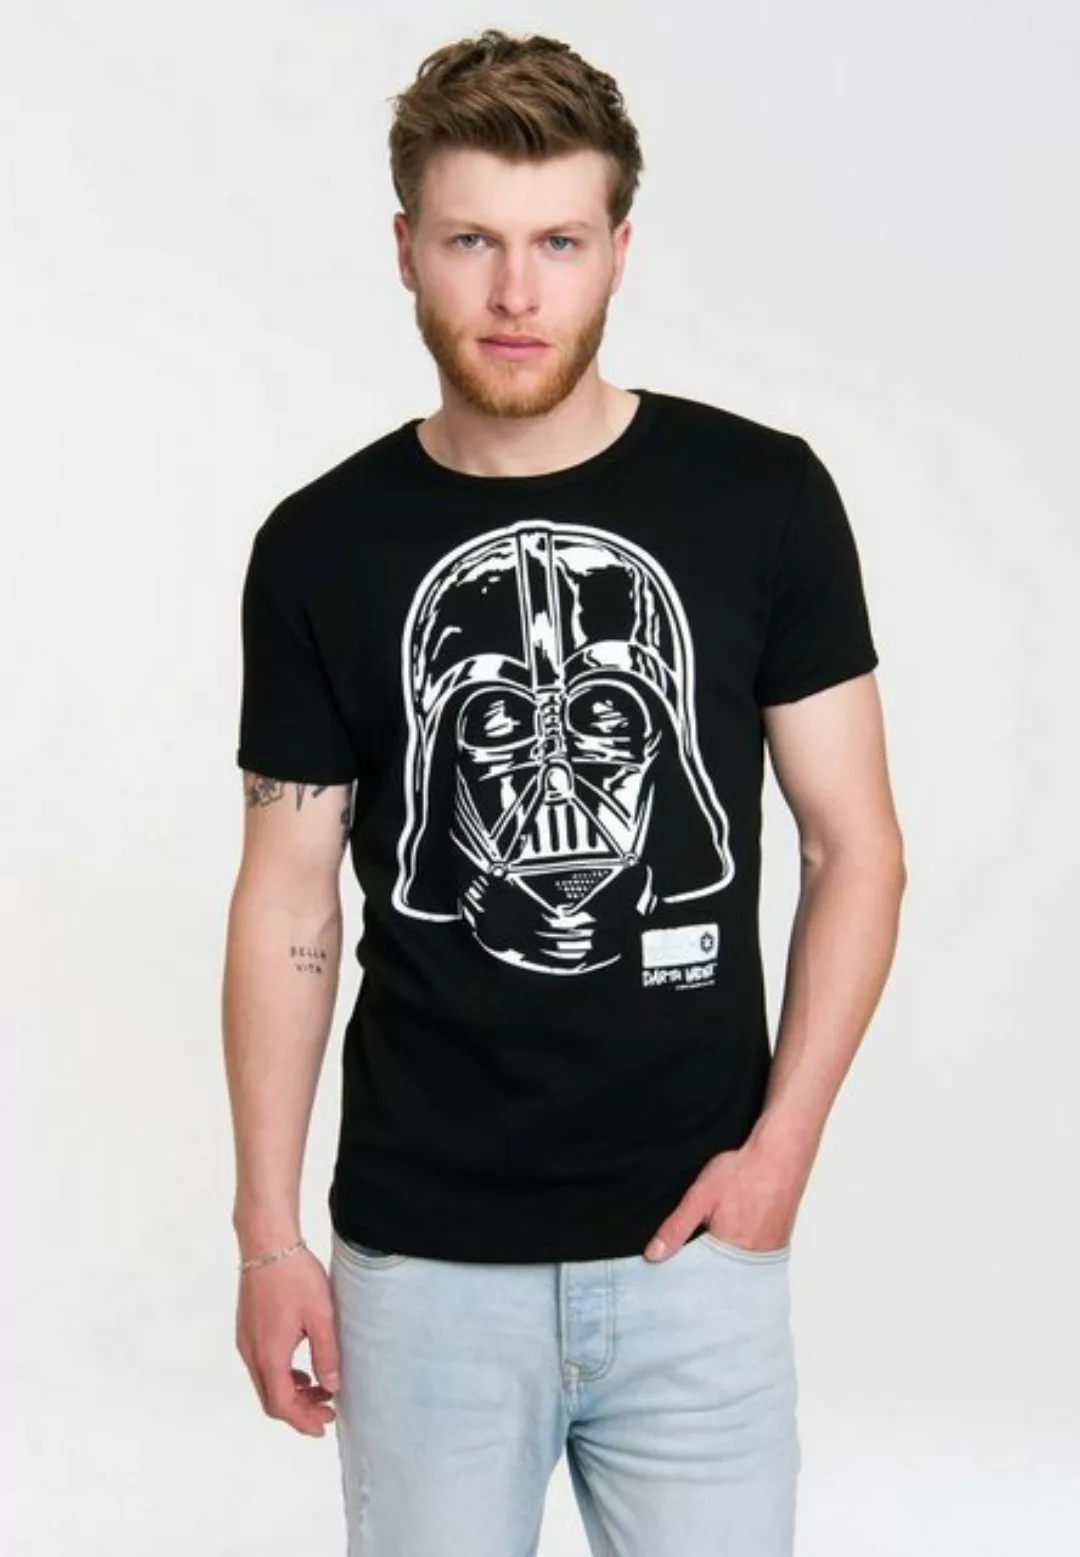 LOGOSHIRT T-Shirt Star Wars mit lizenziertem Originaldesign günstig online kaufen